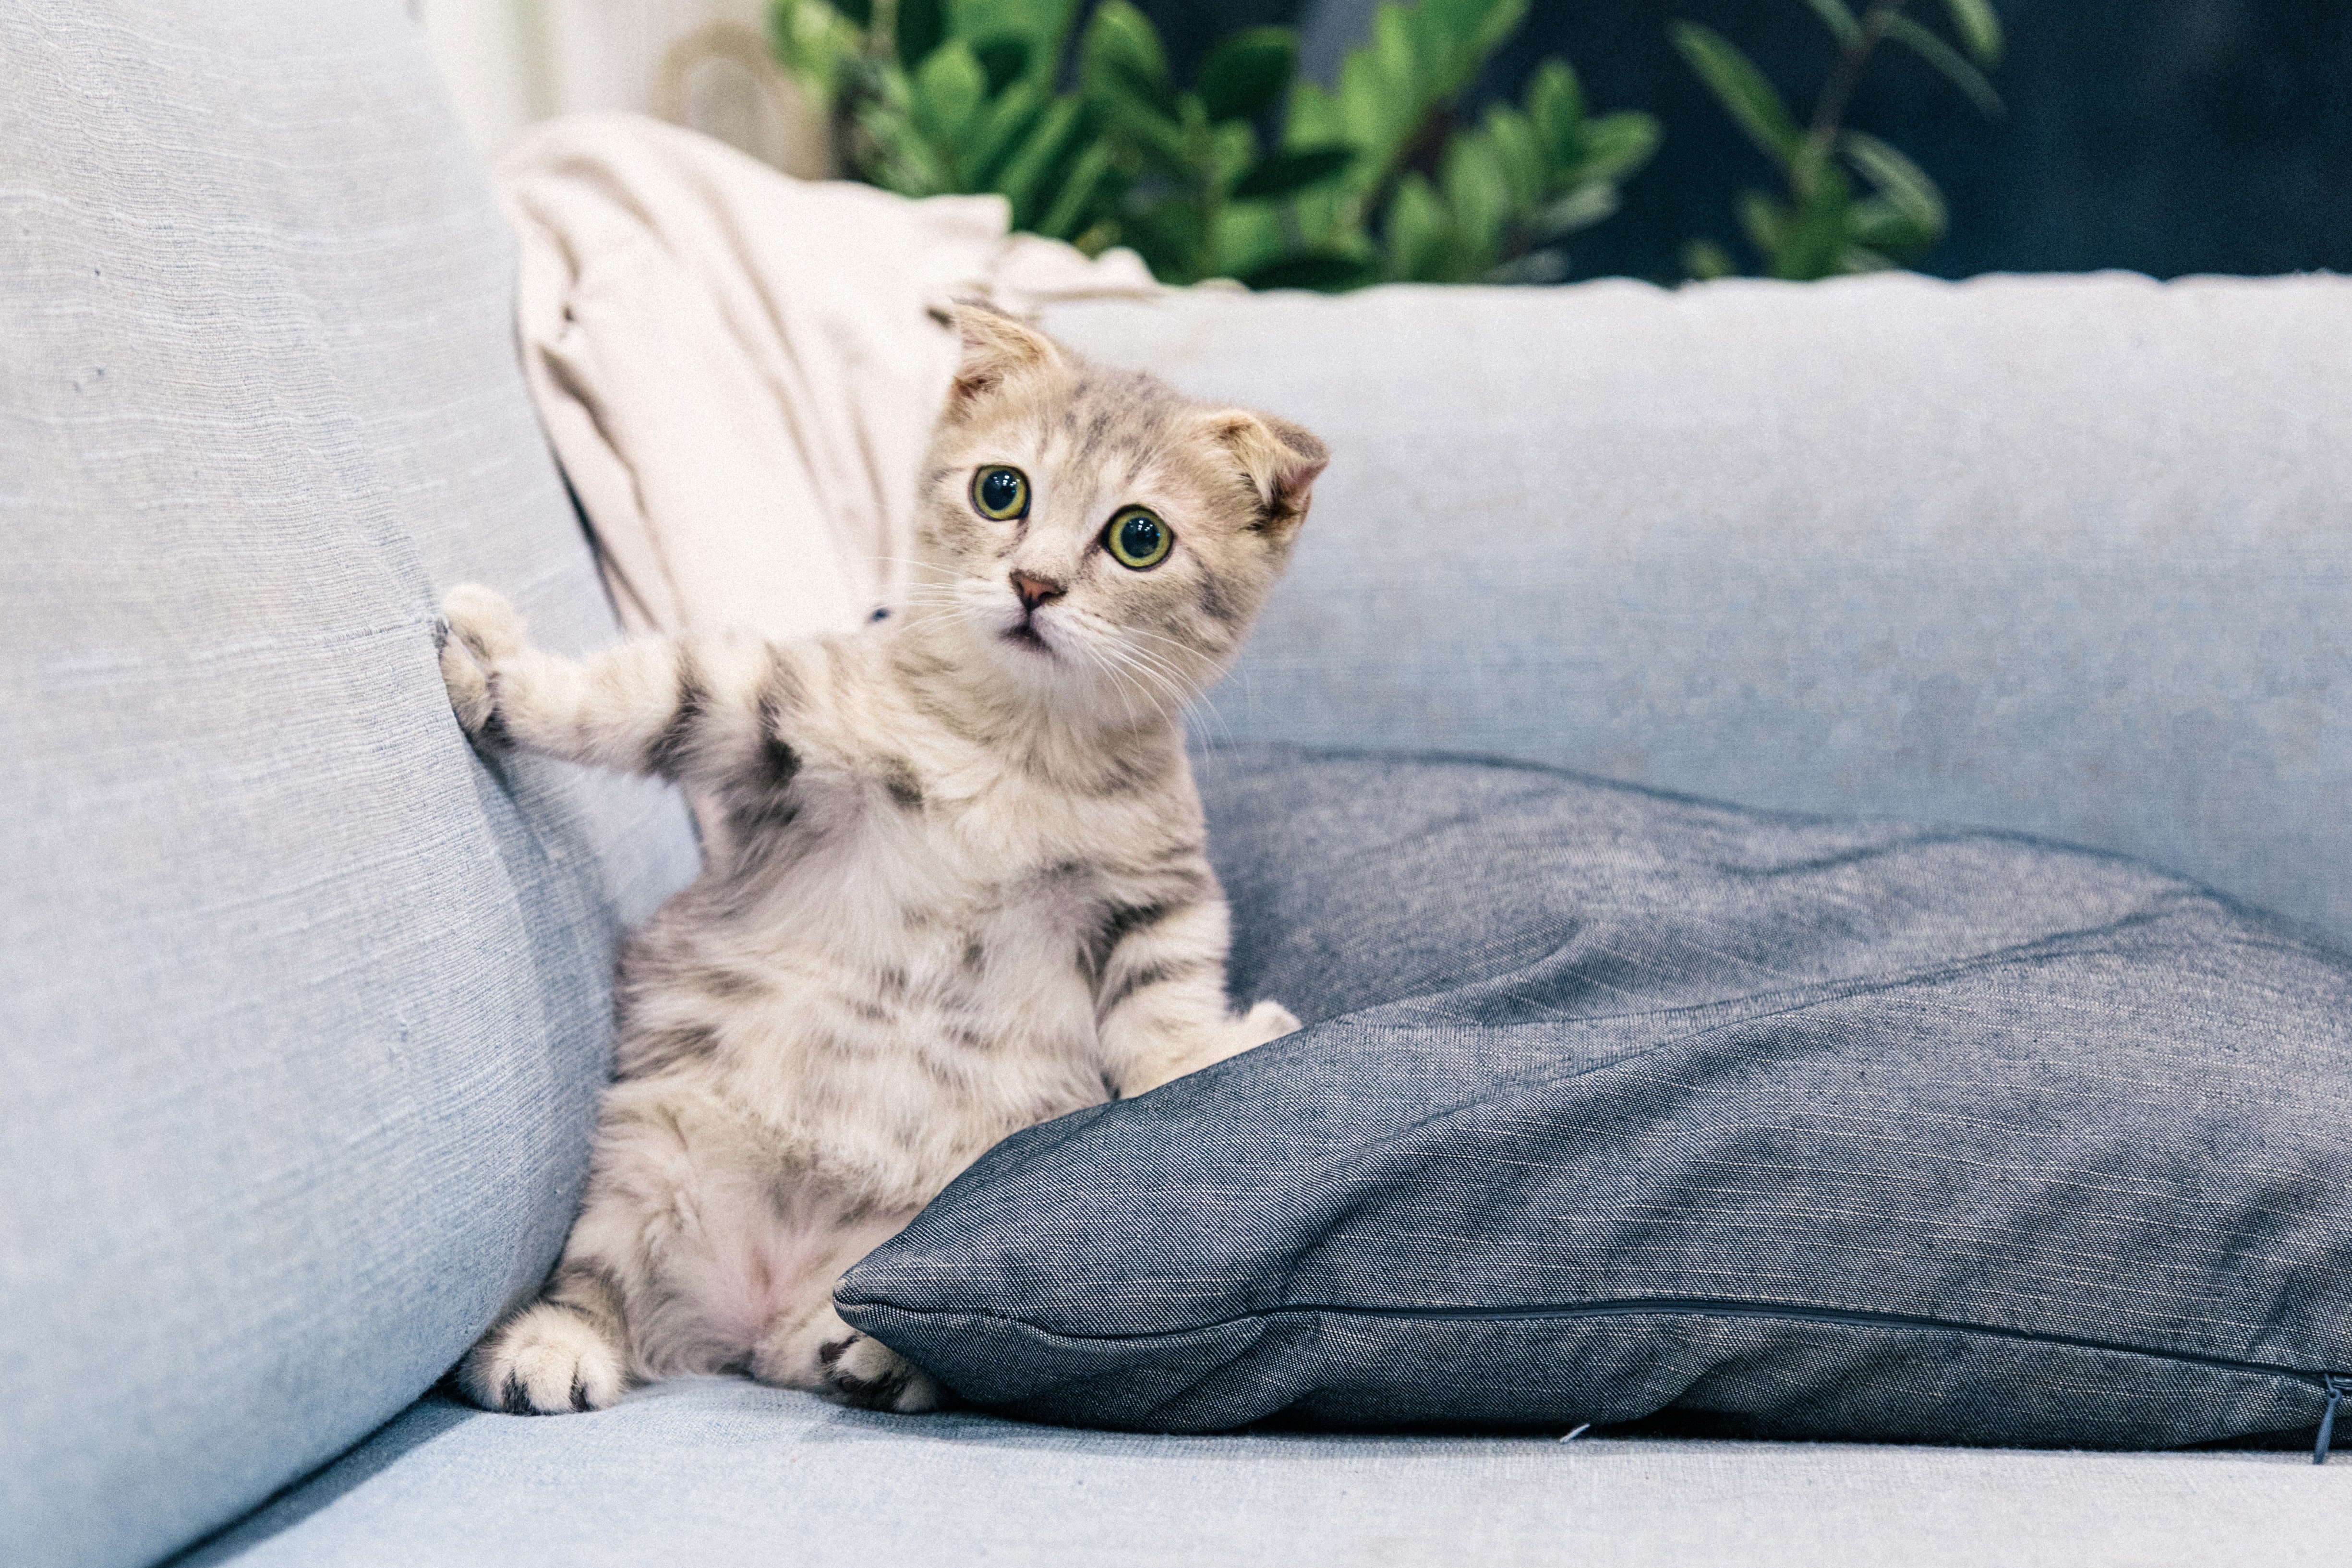 Was tun gegen Urin von jungen Katzen? Wirksame Hausmittel gegen Uringeruch